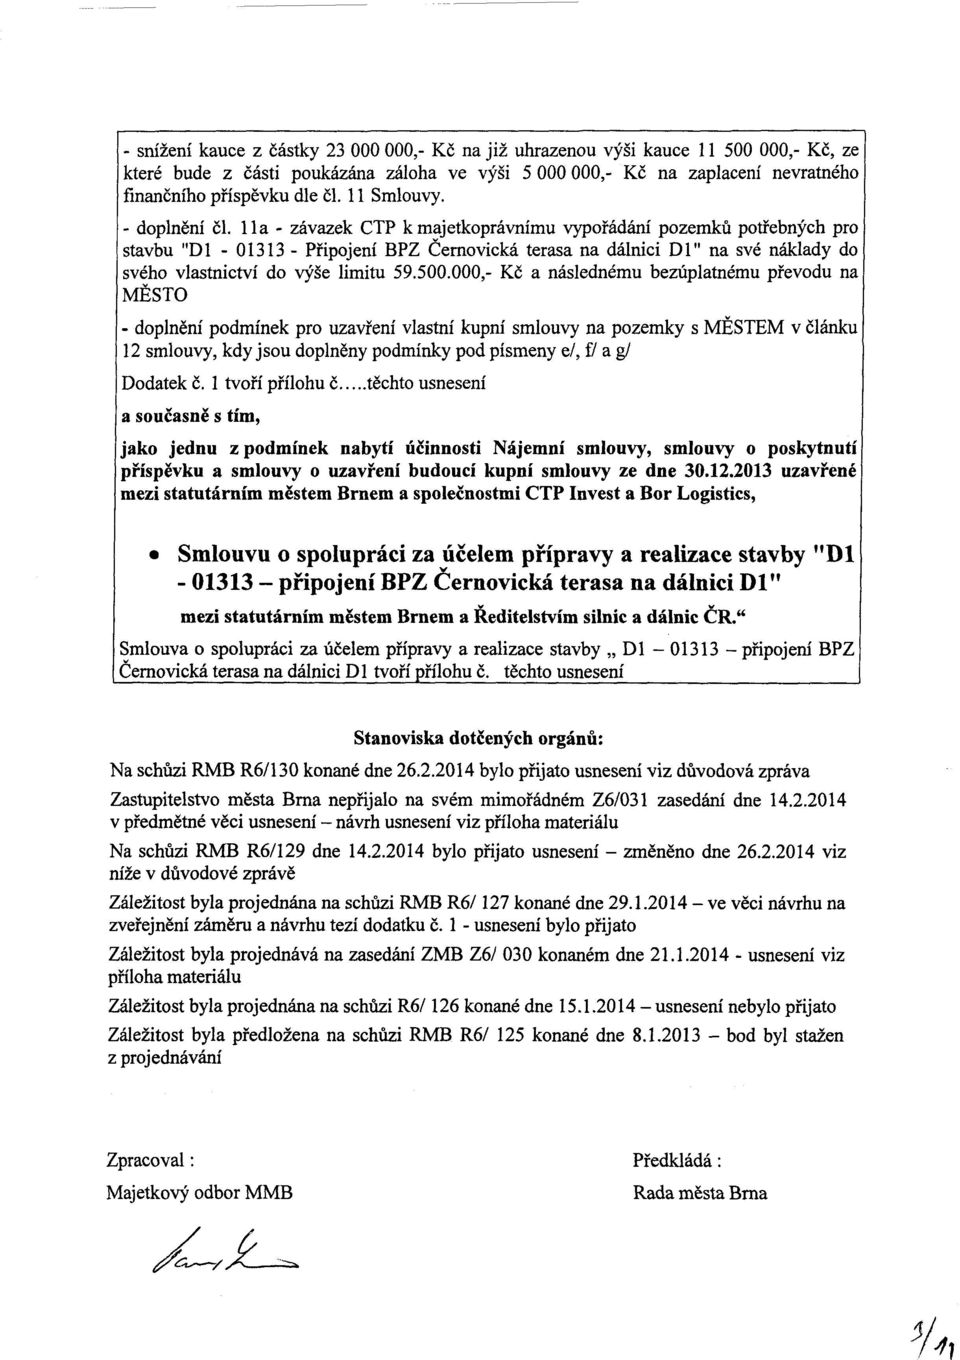 11a - závazek CTP k majetkoprávnímu vypořádání pozemků potřebných pro stavbu "Dl - 01313 - Připojení BPZ Černovická terasa na dálnici Dl" na své náklady do svého vlastnictví do výše limitu 59.500.